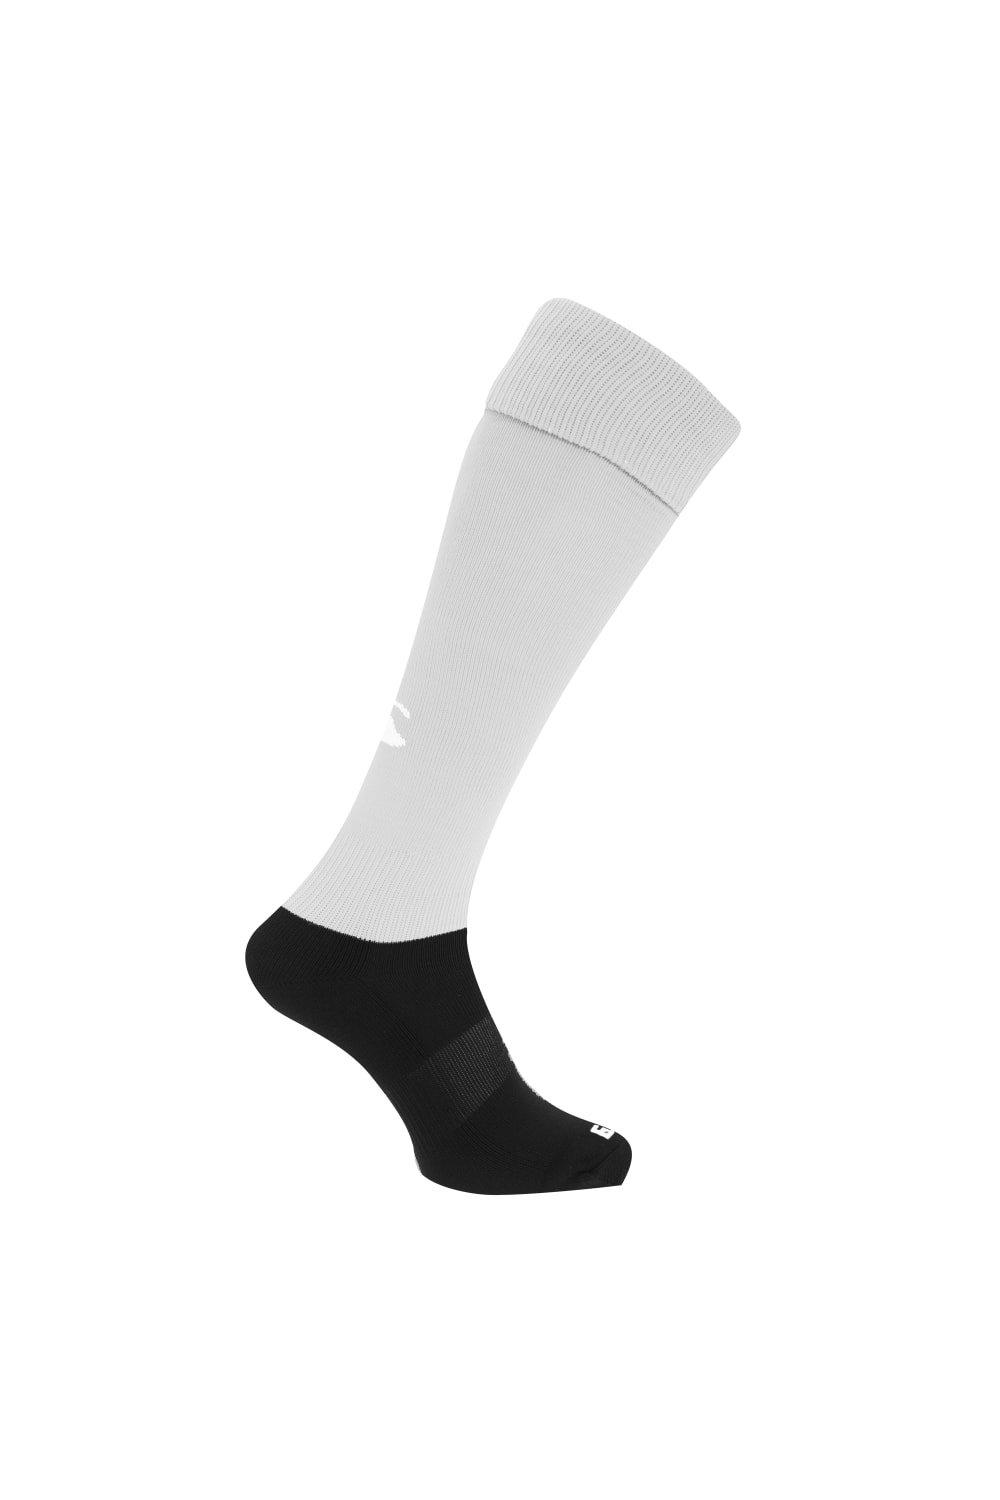 Спортивные носки для игры в регби Canterbury, белый чёрные спортивные брюки overcome с контрастными деталями